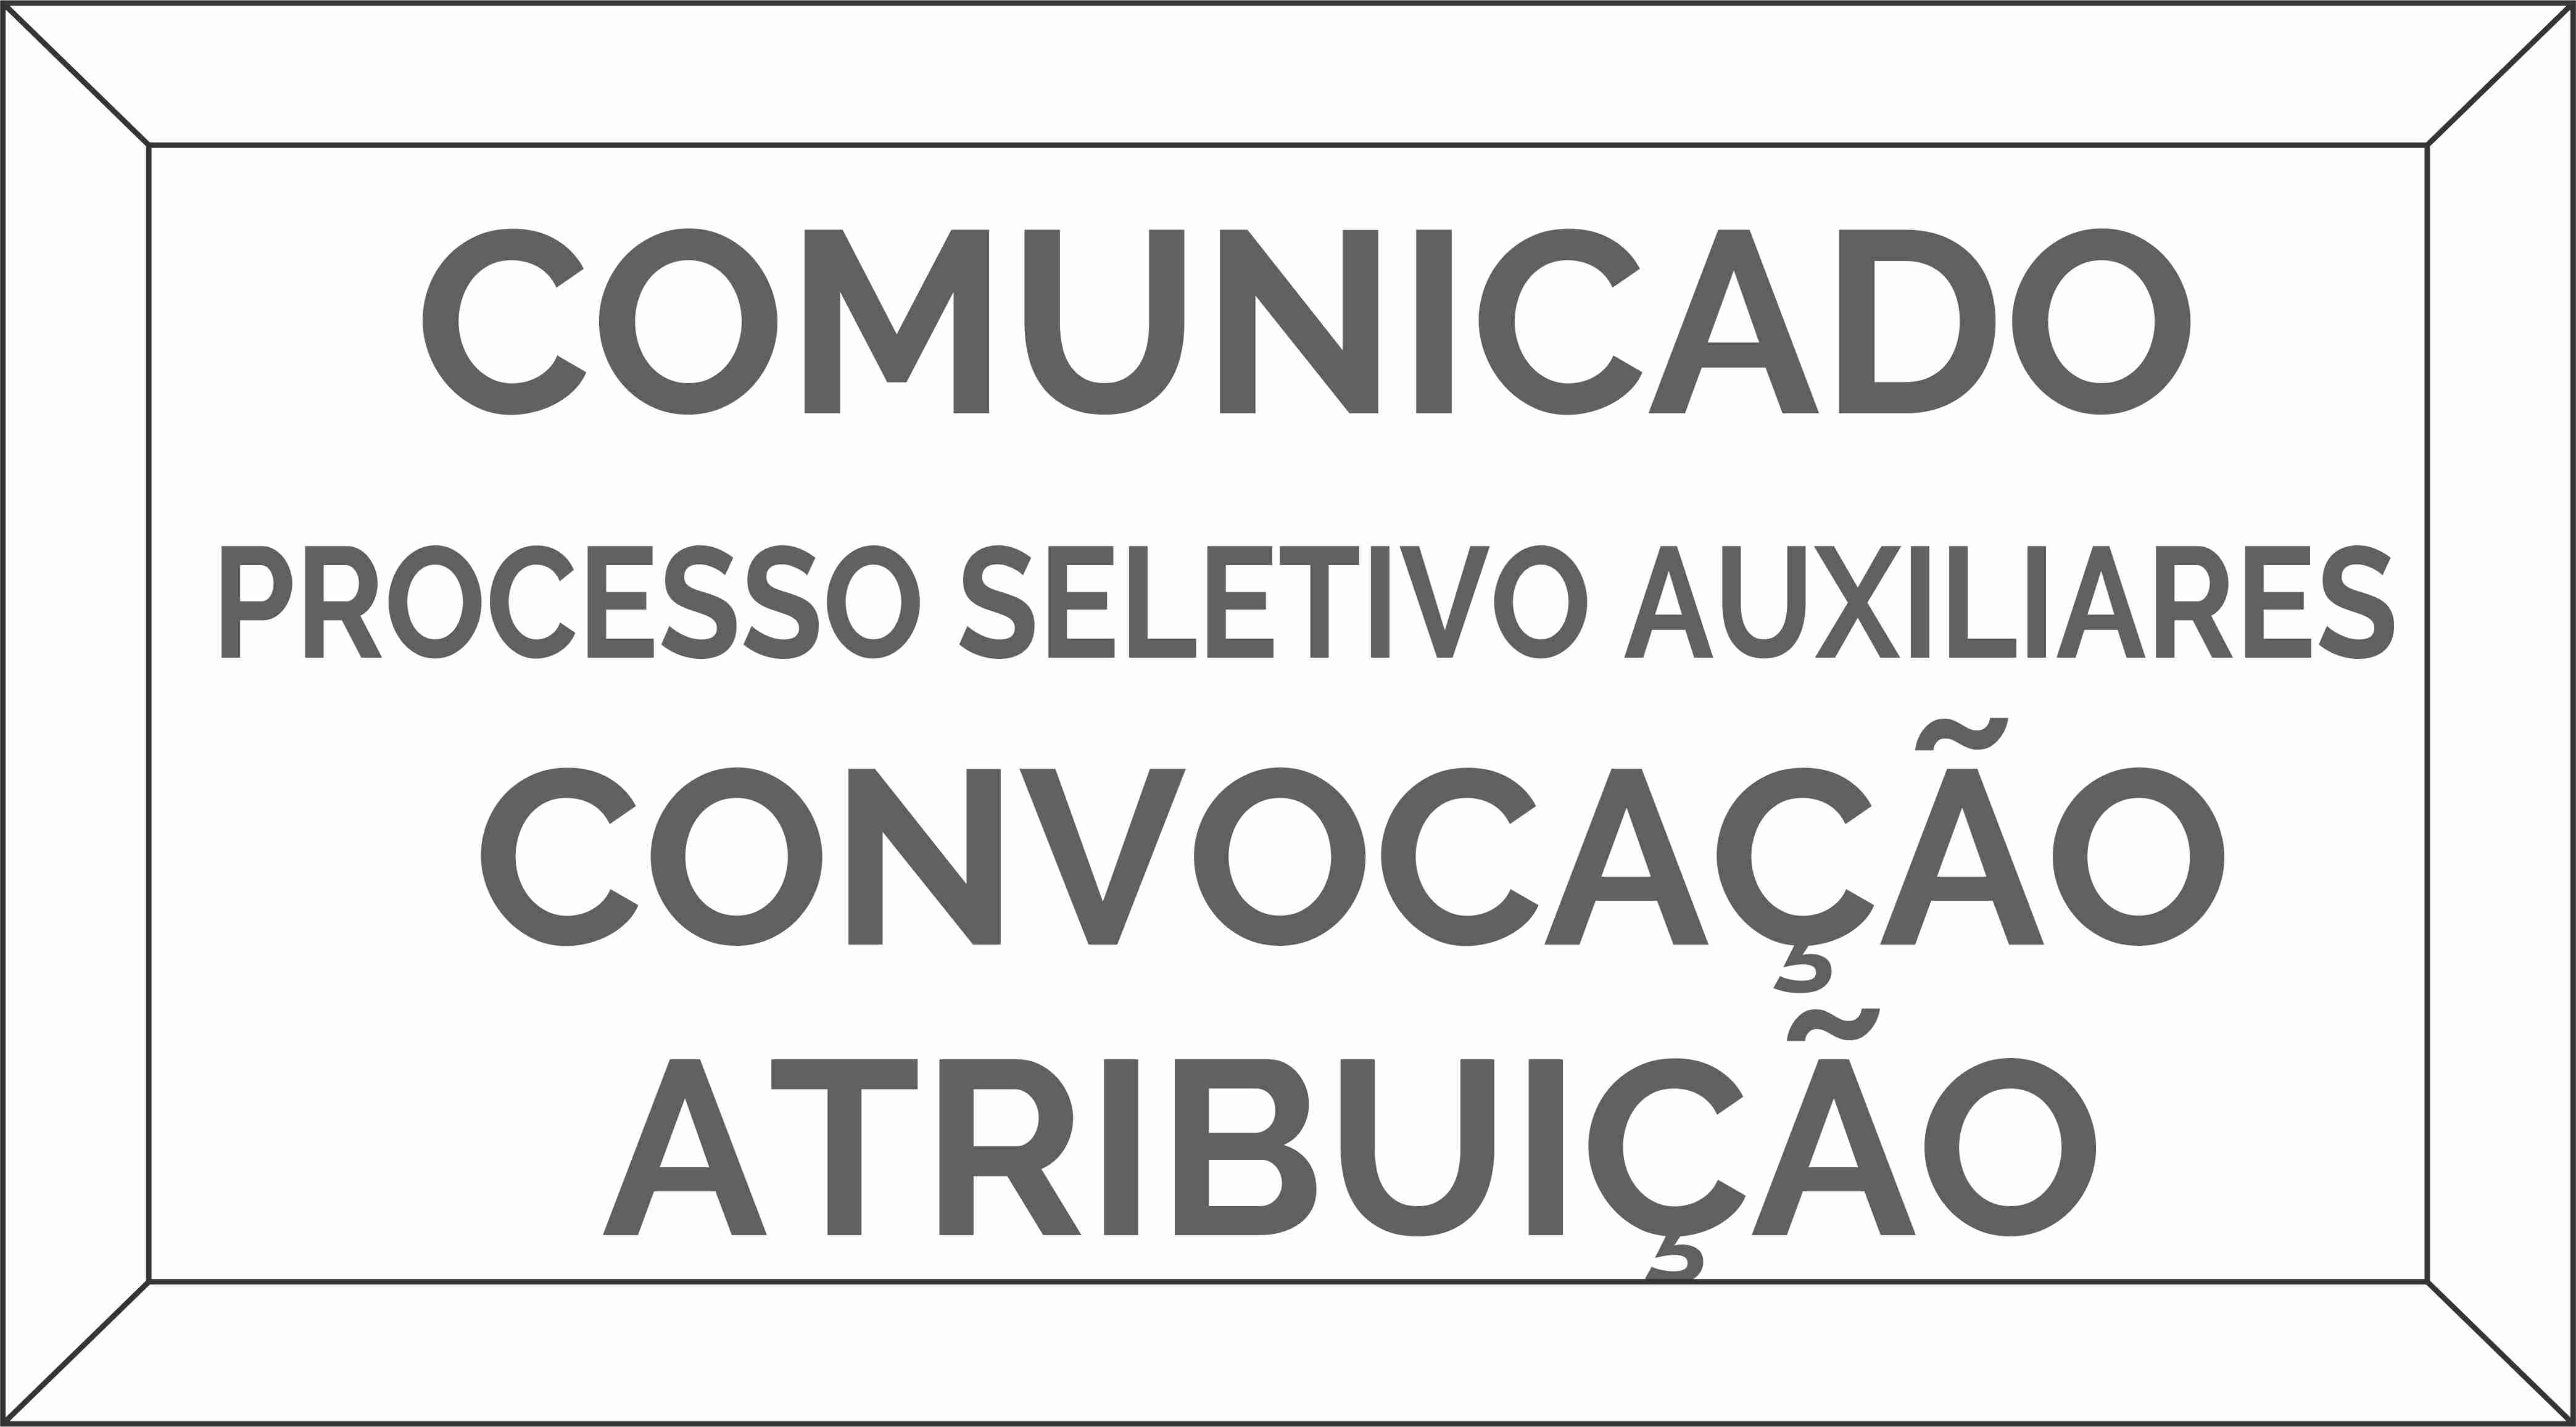 Comunicado de Convocao para Atribuio de Vagas do Processo Seletivo N. 07/2017 - AUXILIAR